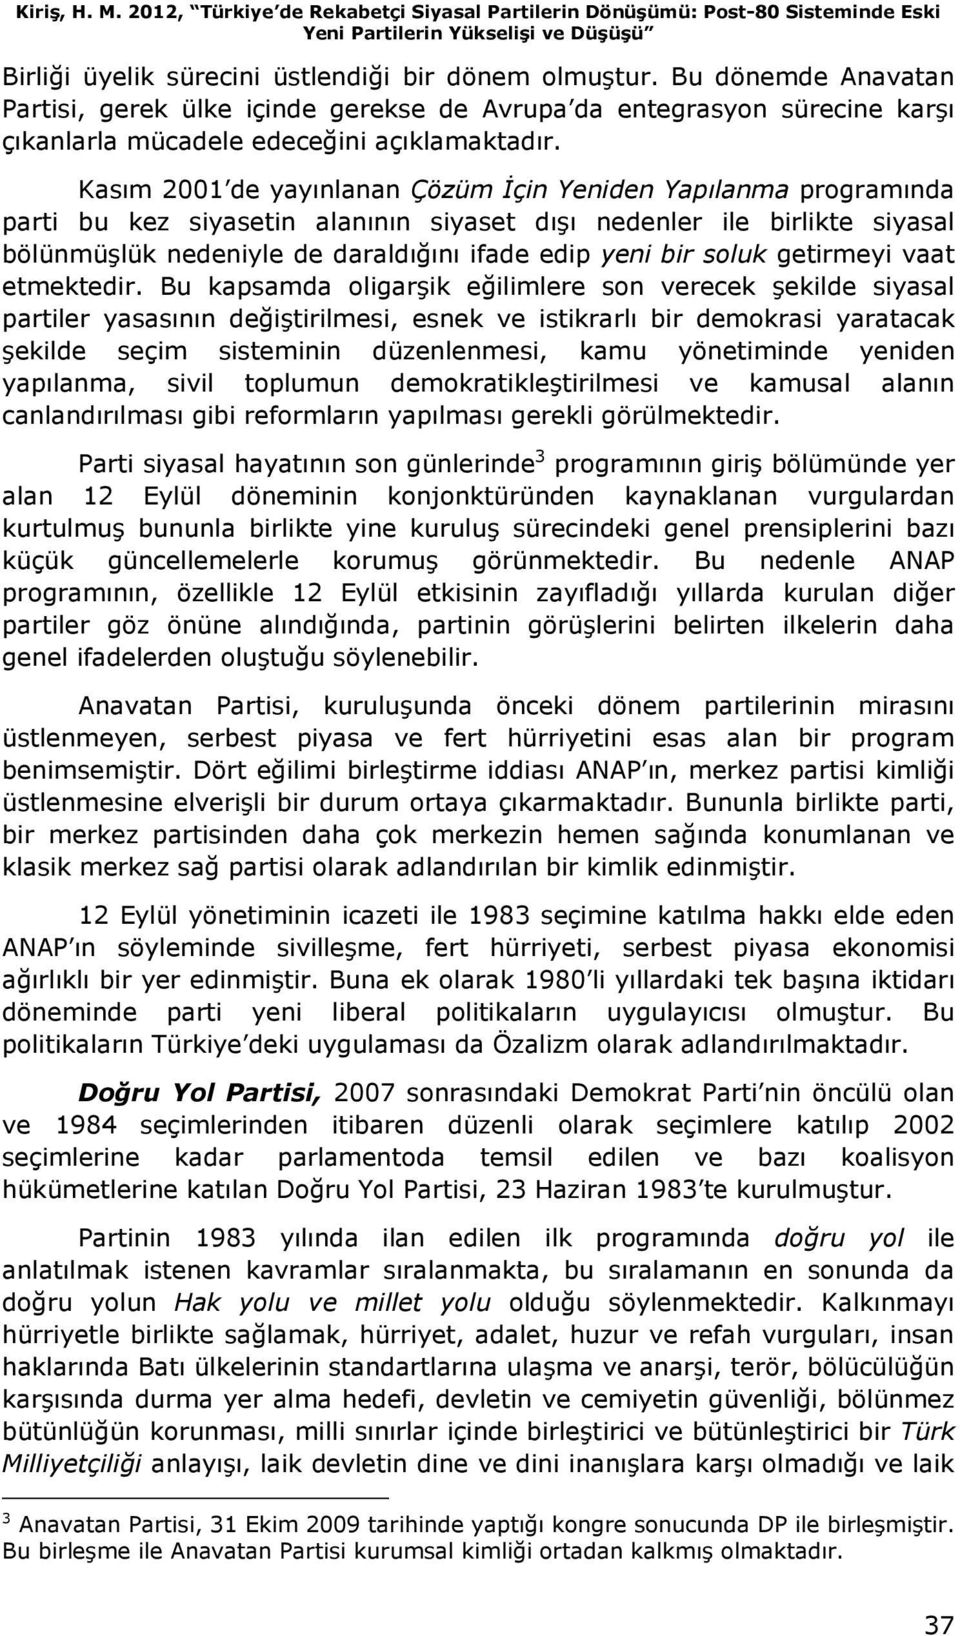 Kasım 2001 de yayınlanan Çözüm Đçin Yeniden Yapılanma programında parti bu kez siyasetin alanının siyaset dışı nedenler ile birlikte siyasal bölünmüşlük nedeniyle de daraldığını ifade edip yeni bir